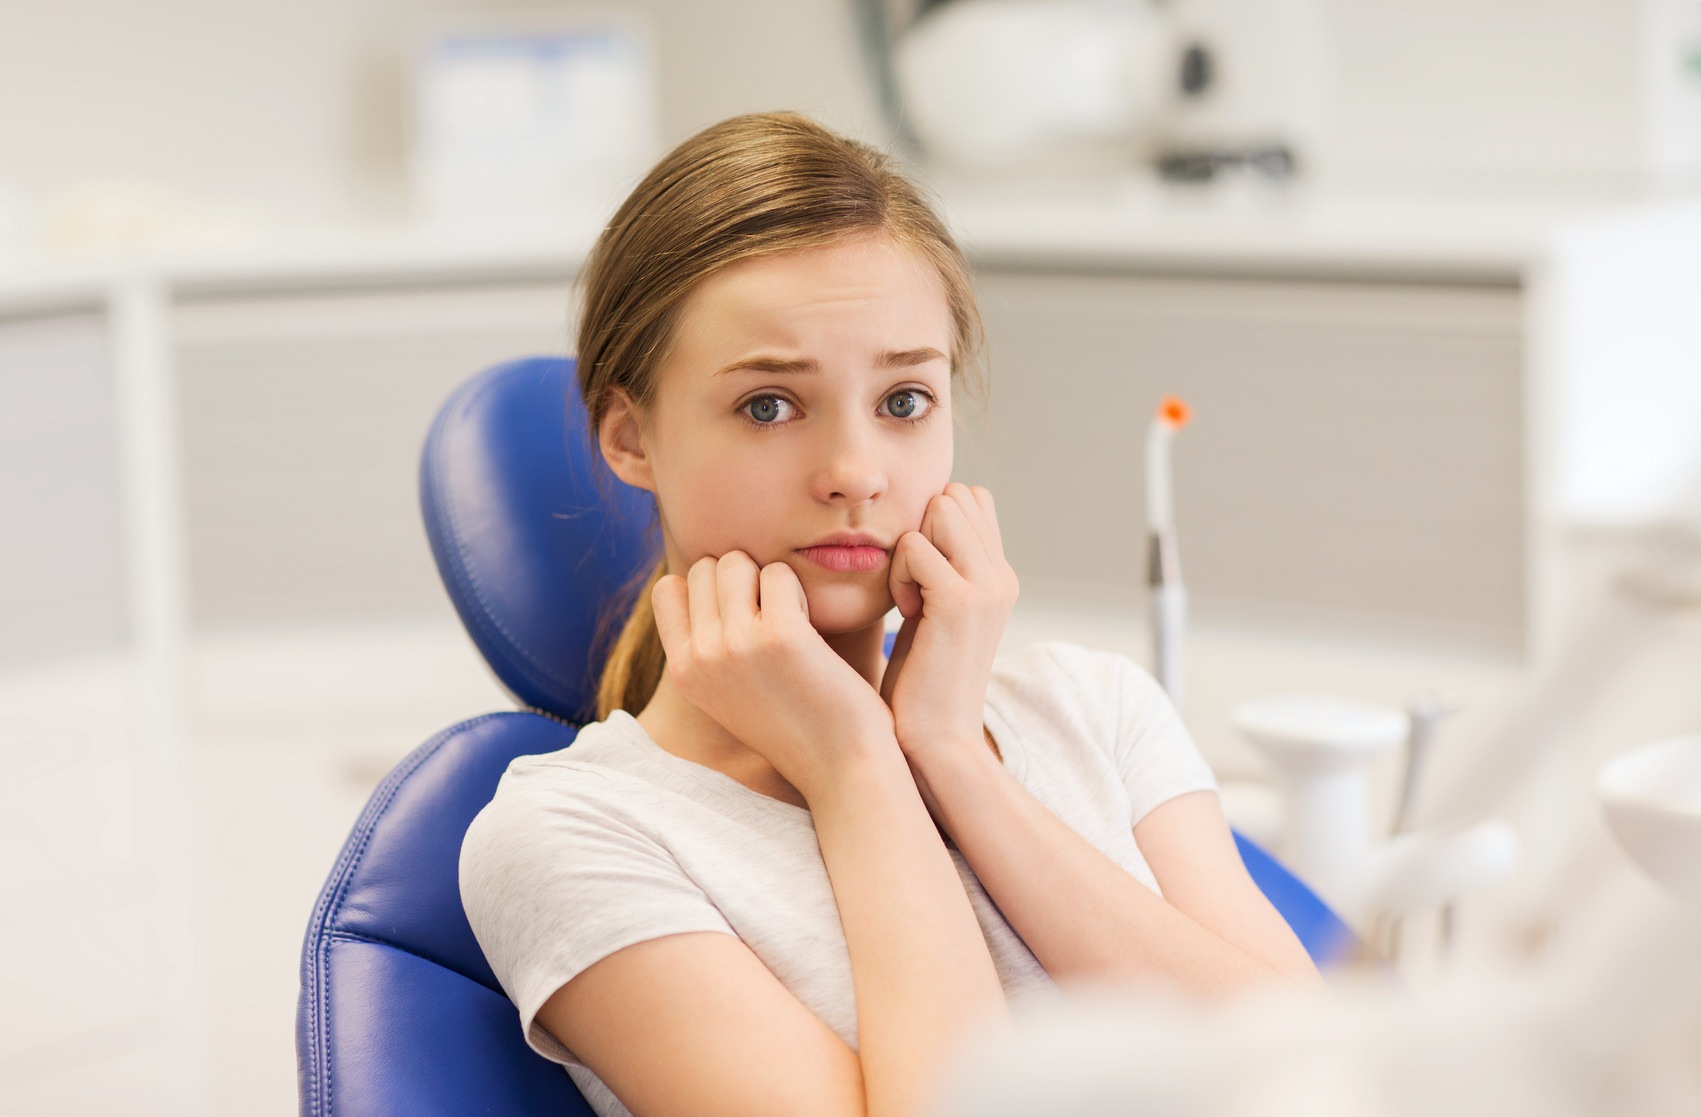  بررسی اضطراب مراجعین دندان پزشکی و علل آن